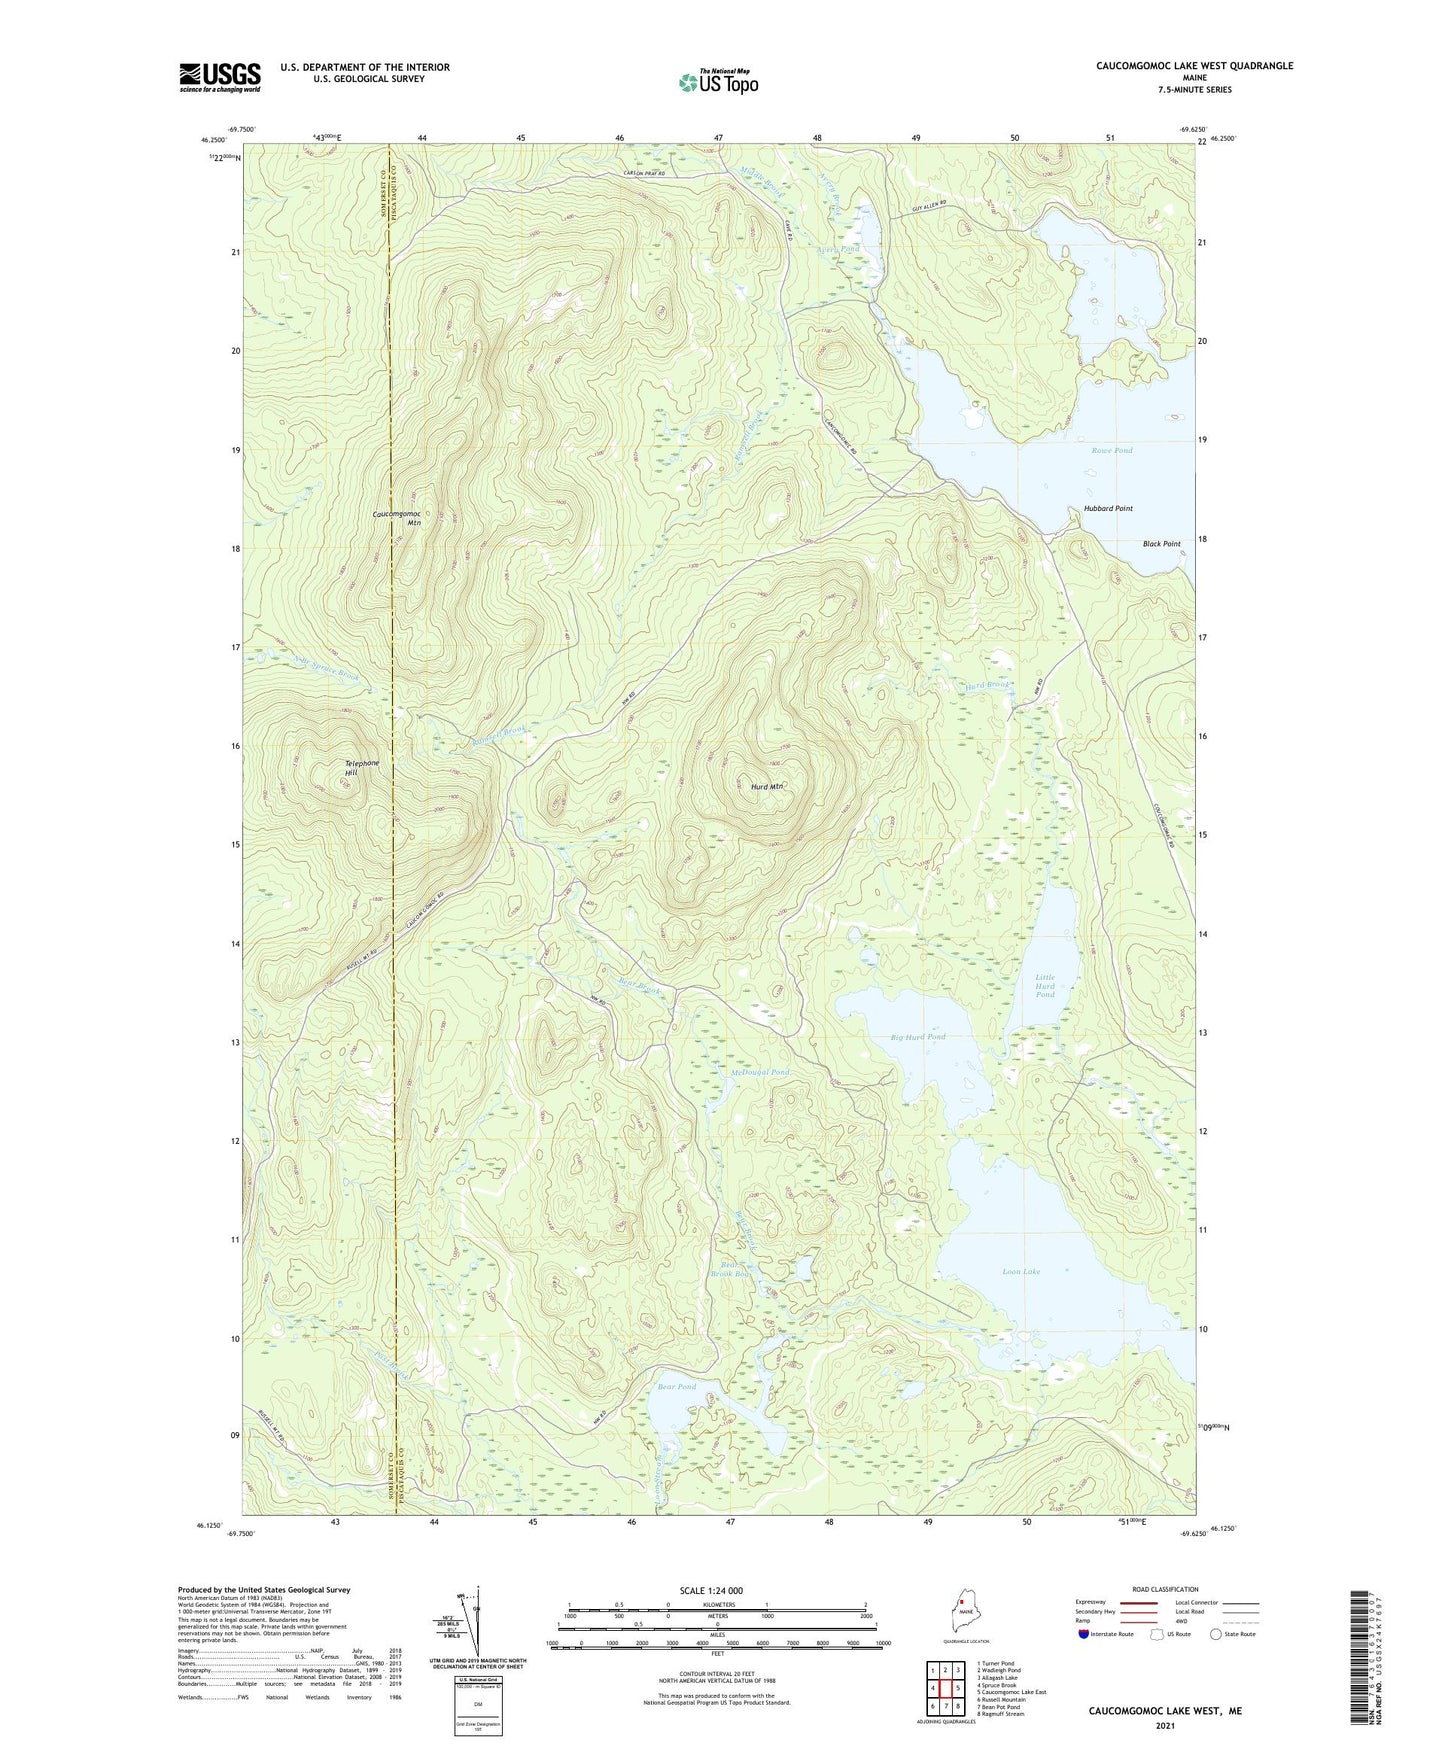 Caucomgomoc Lake West Maine US Topo Map Image